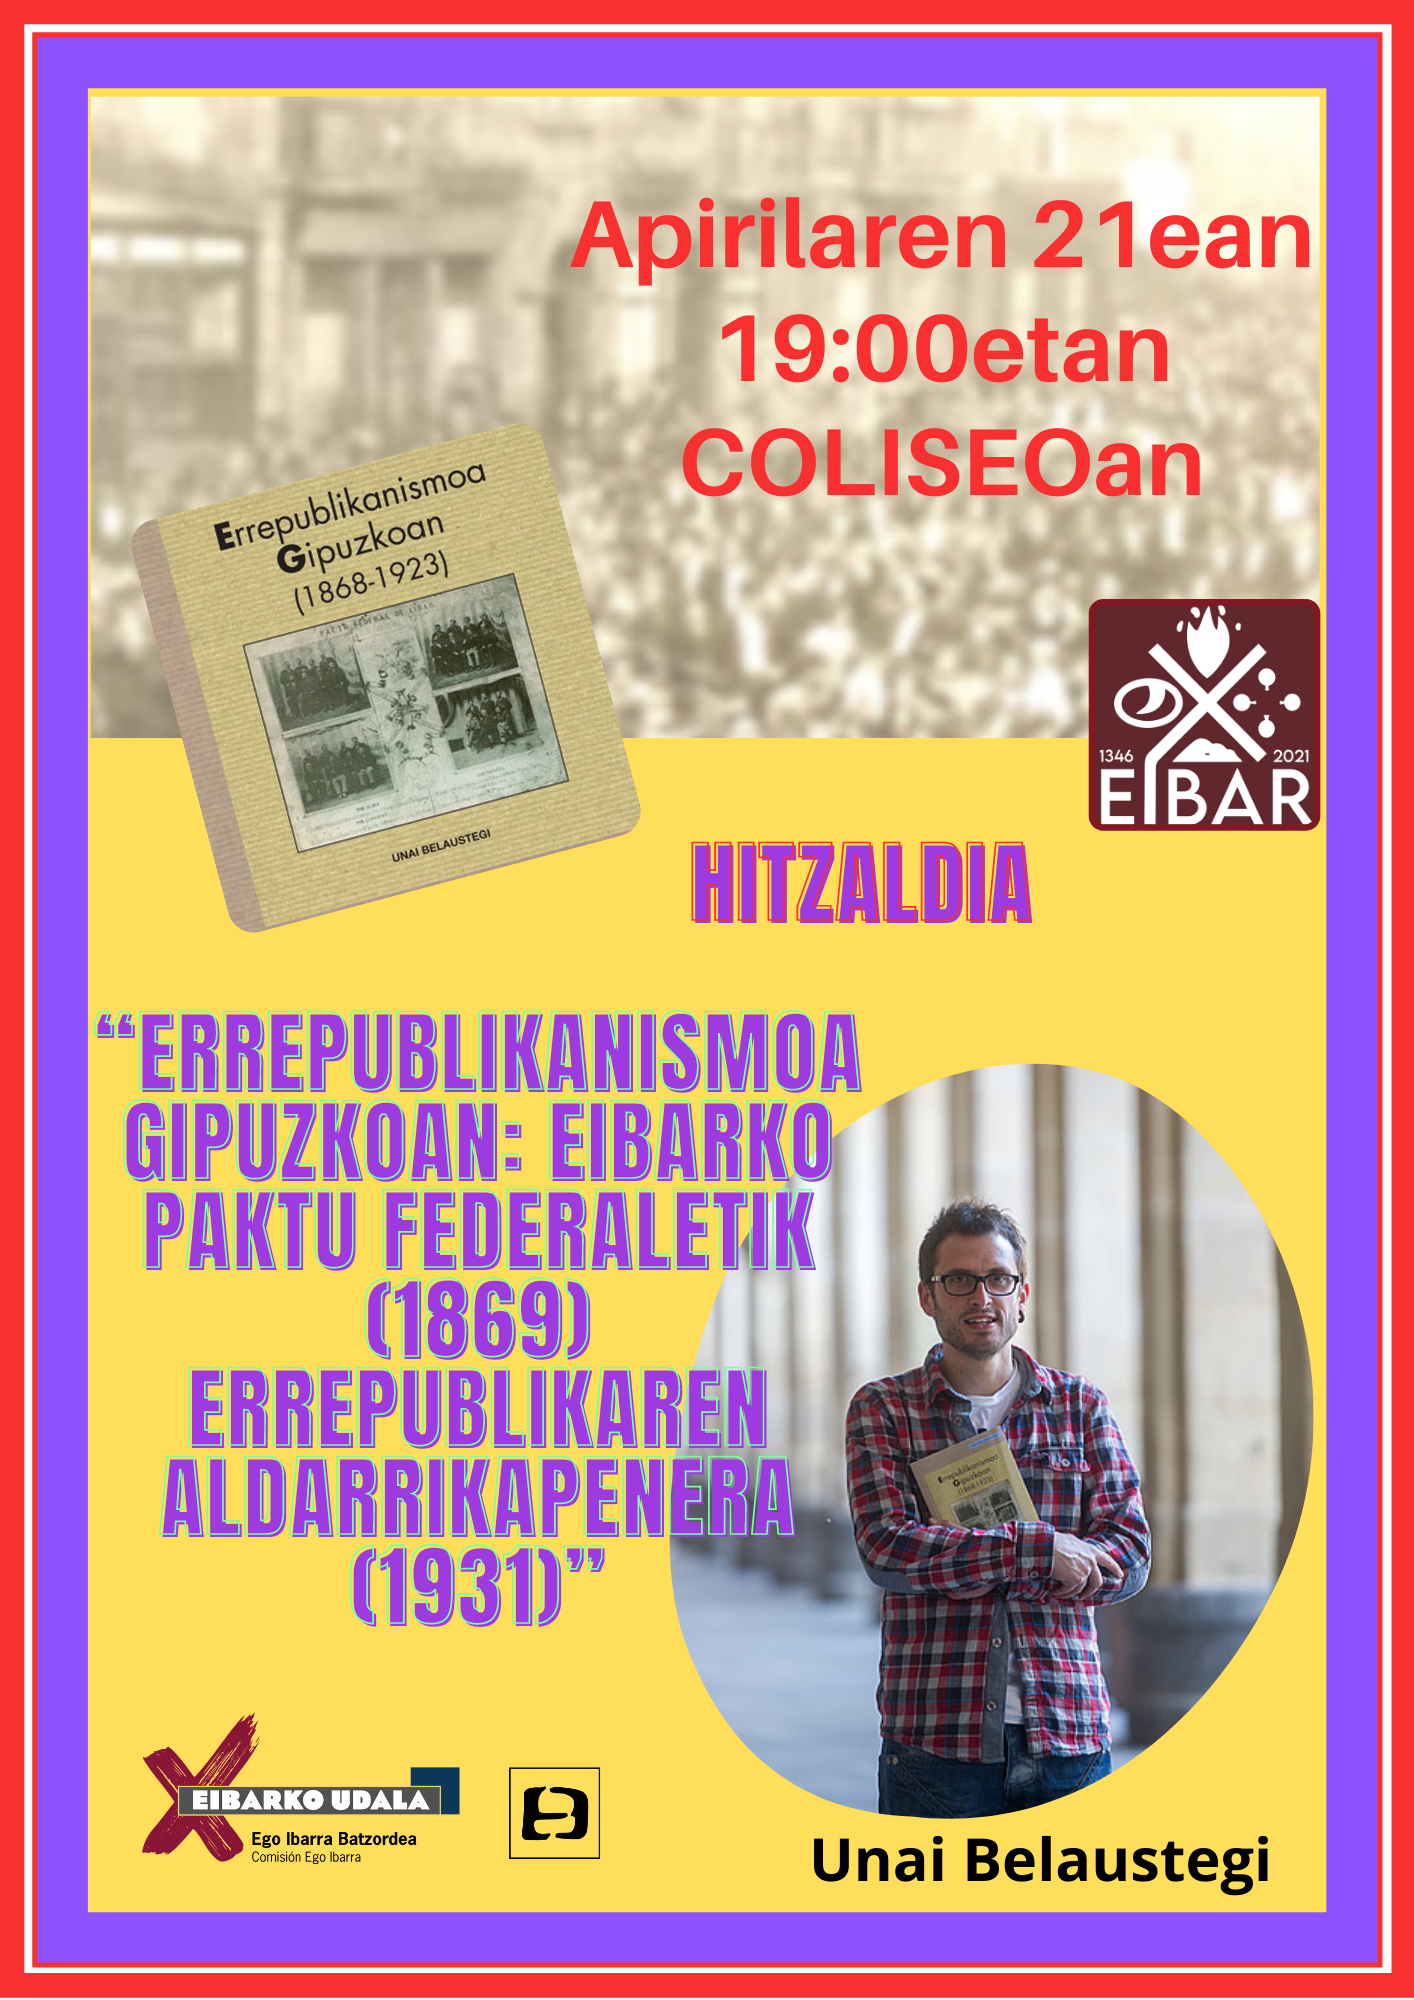 La conferencia Errepublikanismoa Gipuzkoan: Eibarko Paktu Federaletik (1869) Espainiako Bigarren Errepublikaren aldarrikapenera (1931) el día 21 de abril en el Coliseo